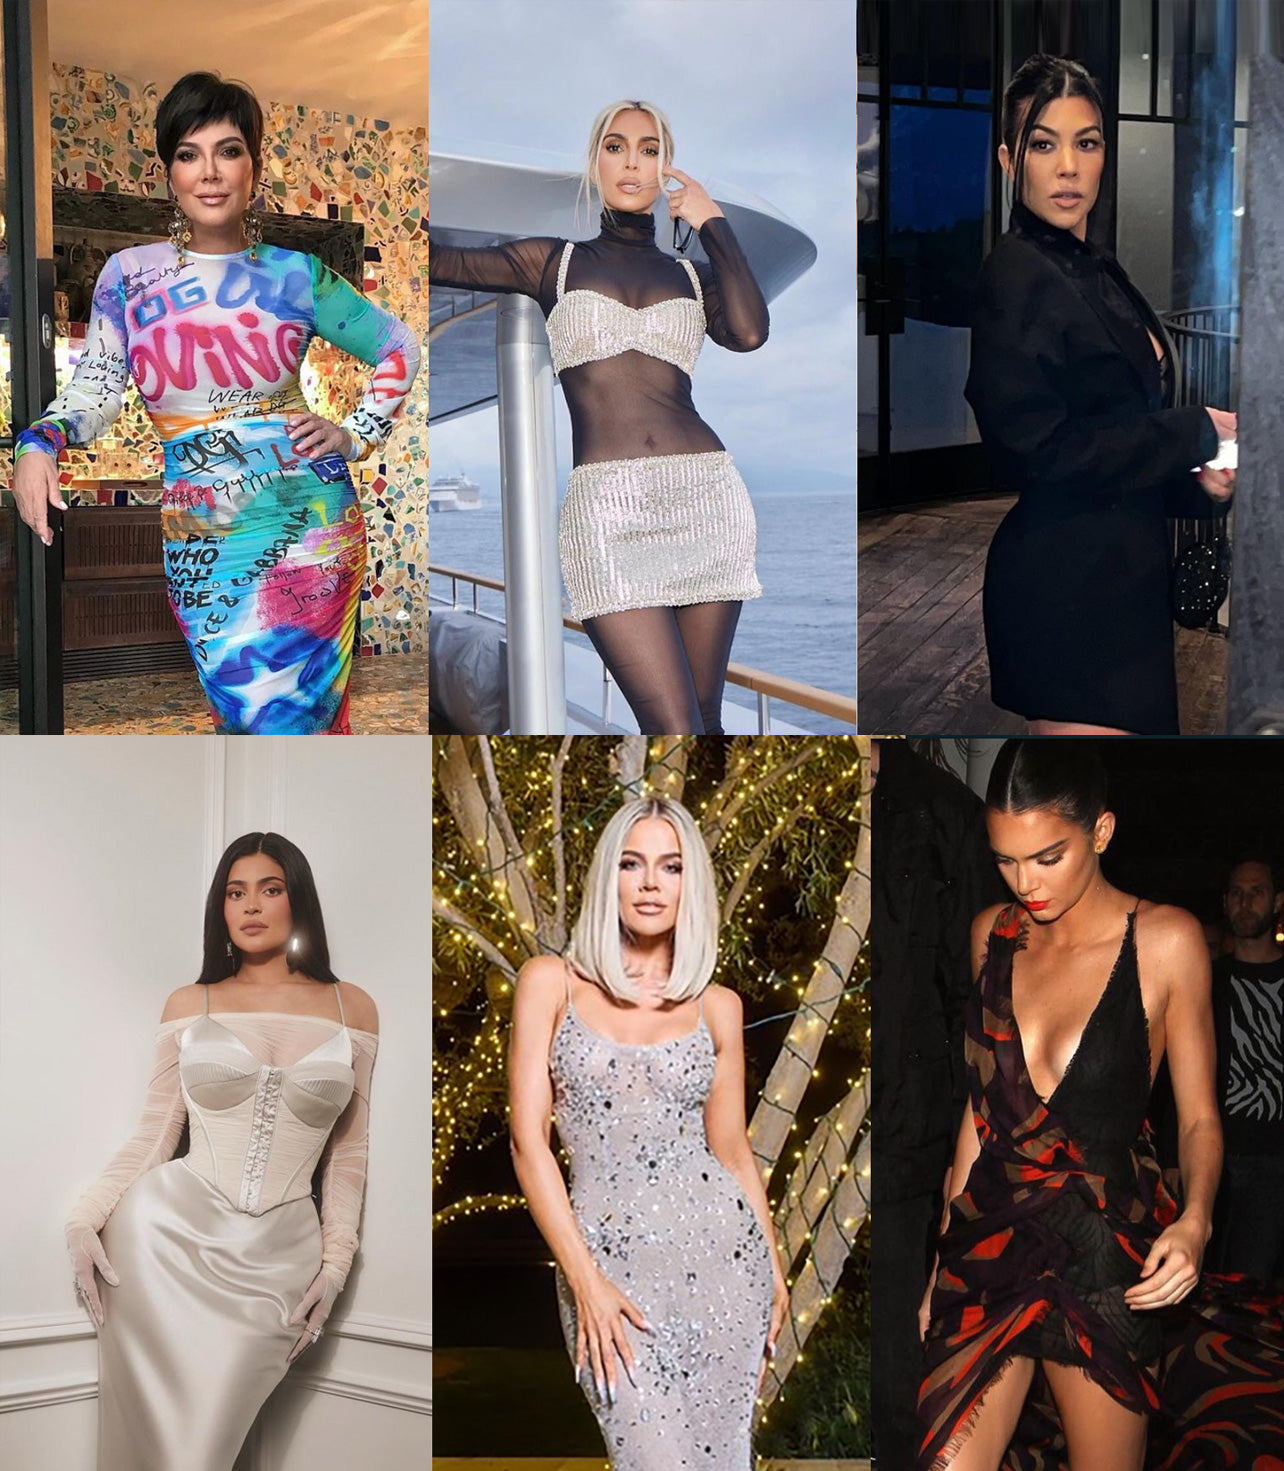 Buy Kim Kardashian?s Clothes on